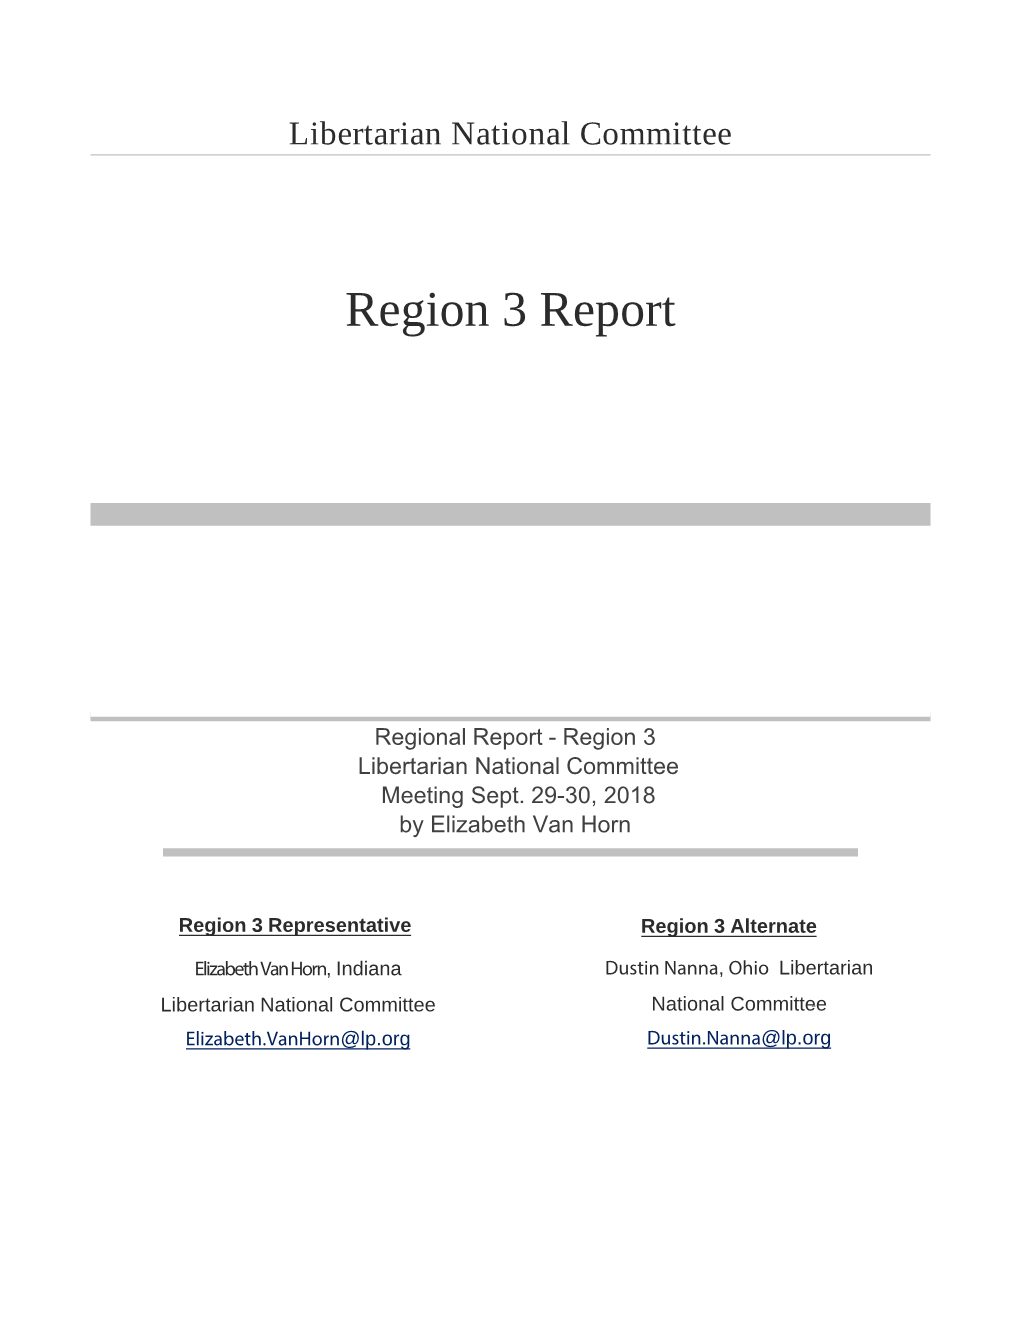 Region 3 Report